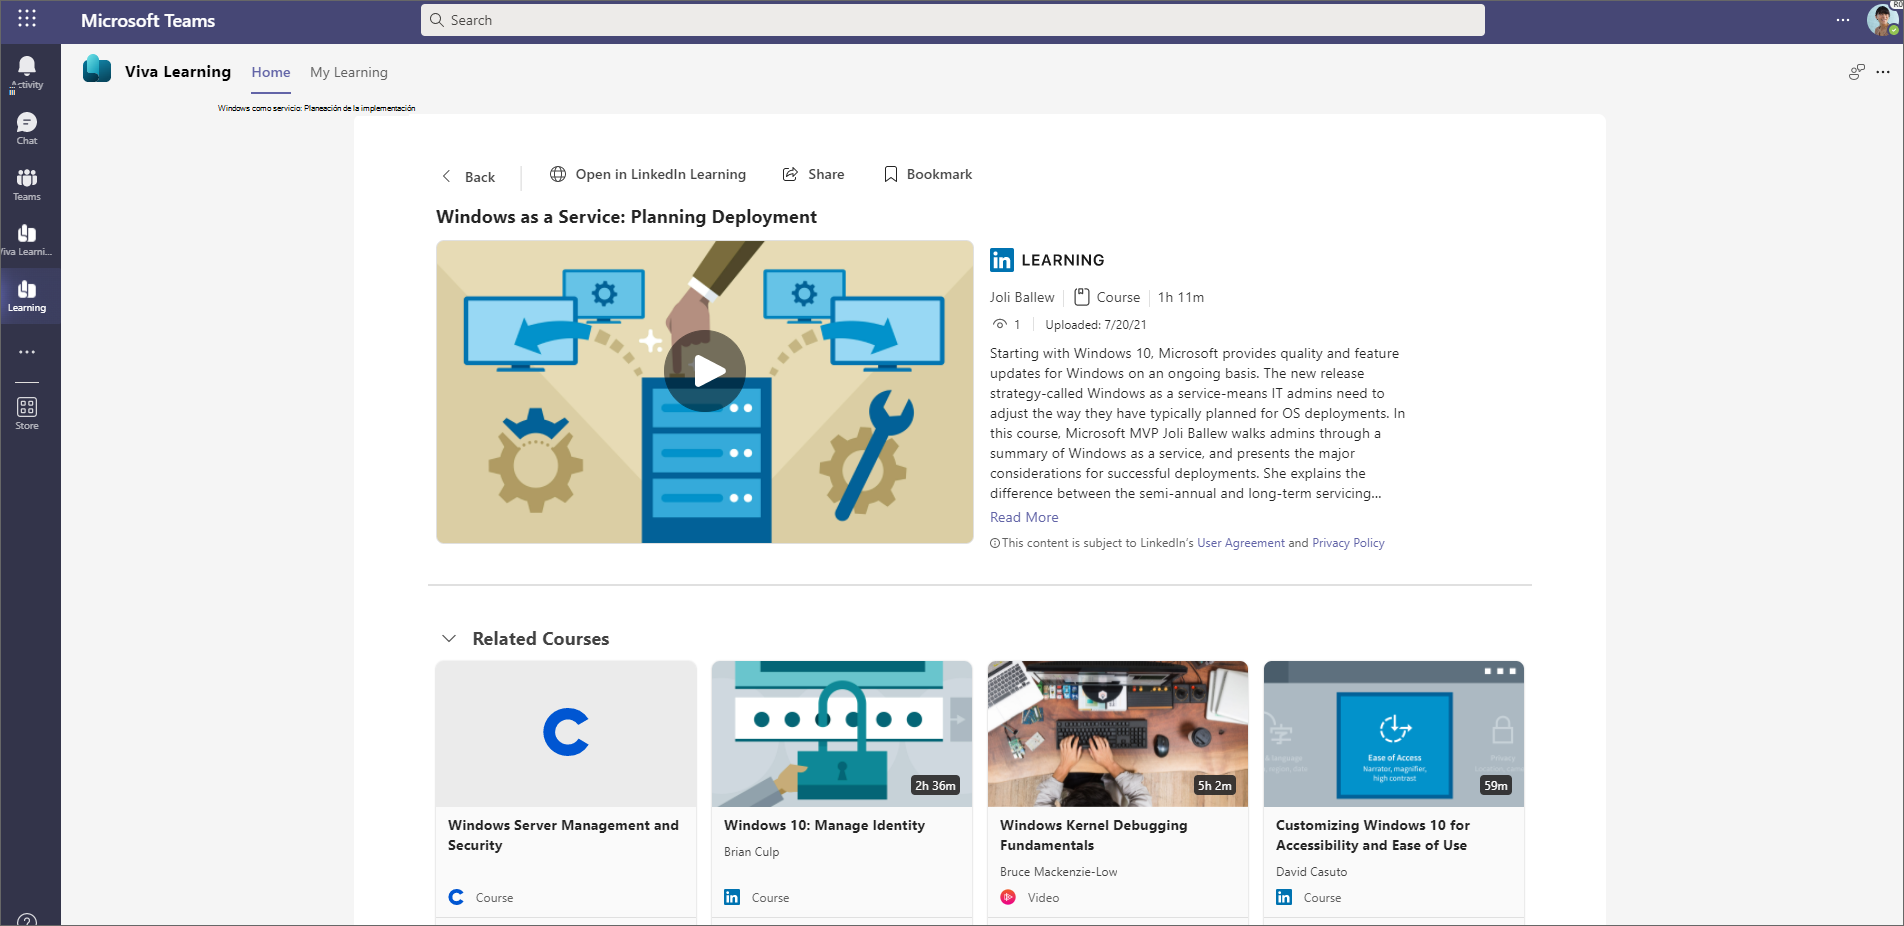 Captura de pantalla de la página principal Viva Learning en Teams.